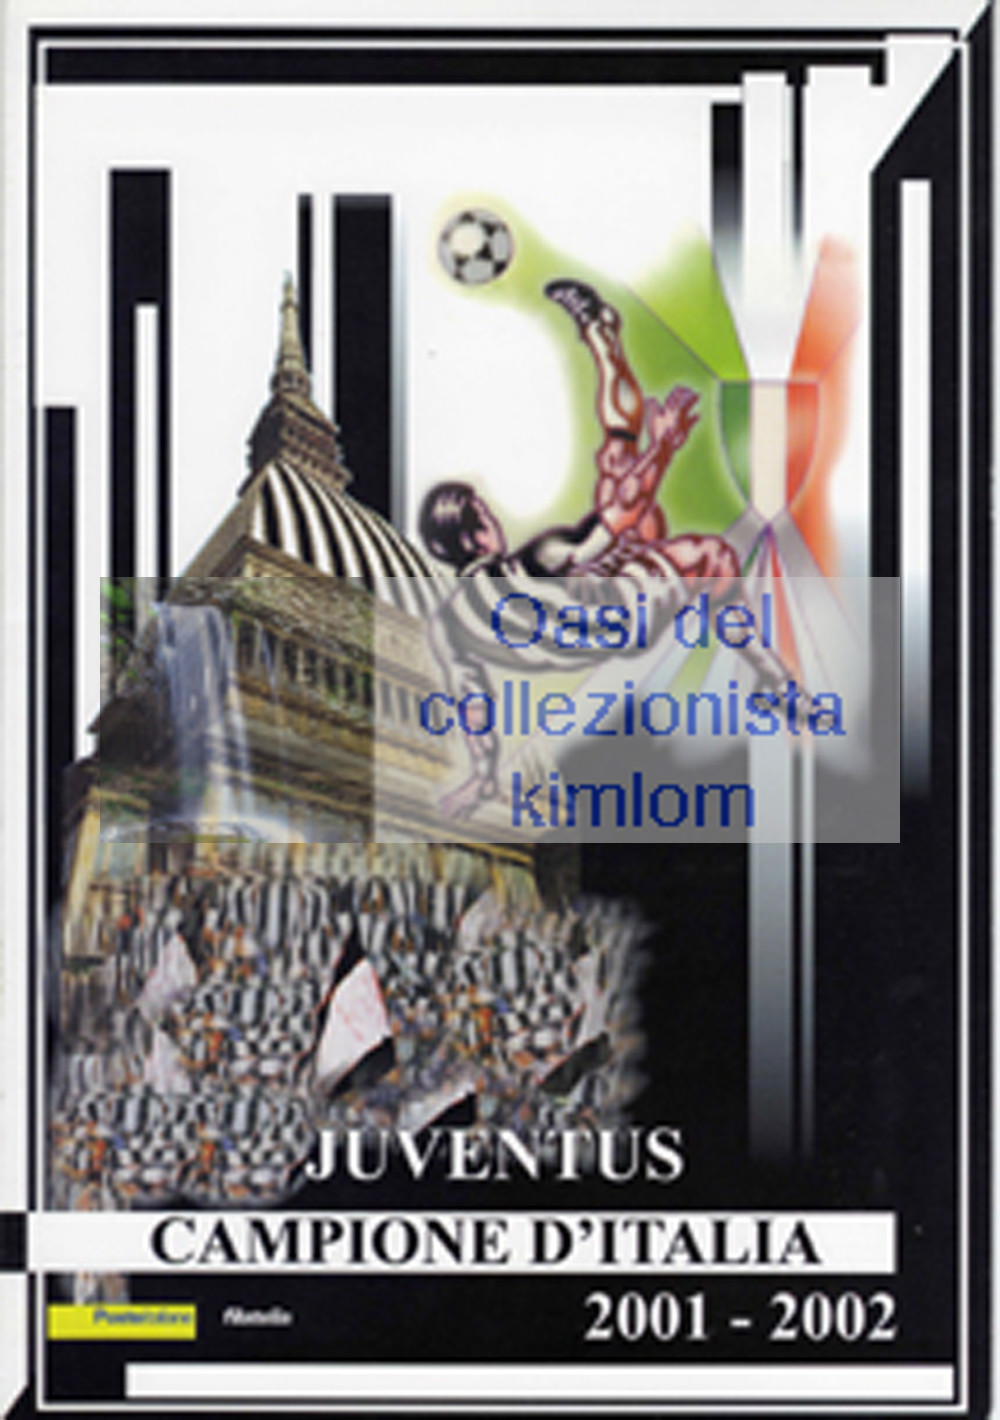 folder - Juventus campione d'Italia 2001/2002